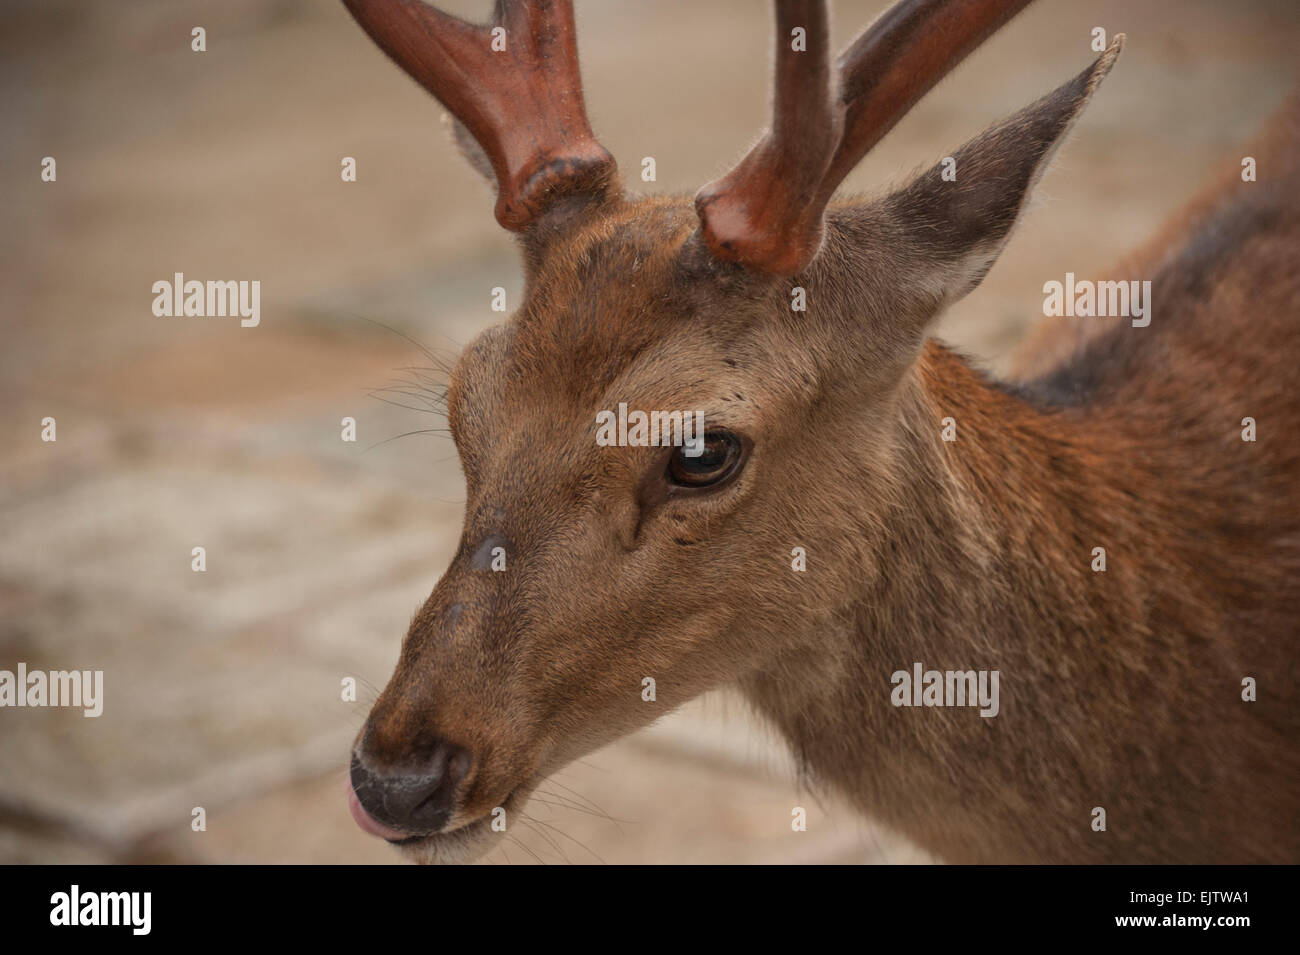 A Japanese deer (Nihon Shika or Shika Deer) at the deer park in Nara, Japan. Stock Photo